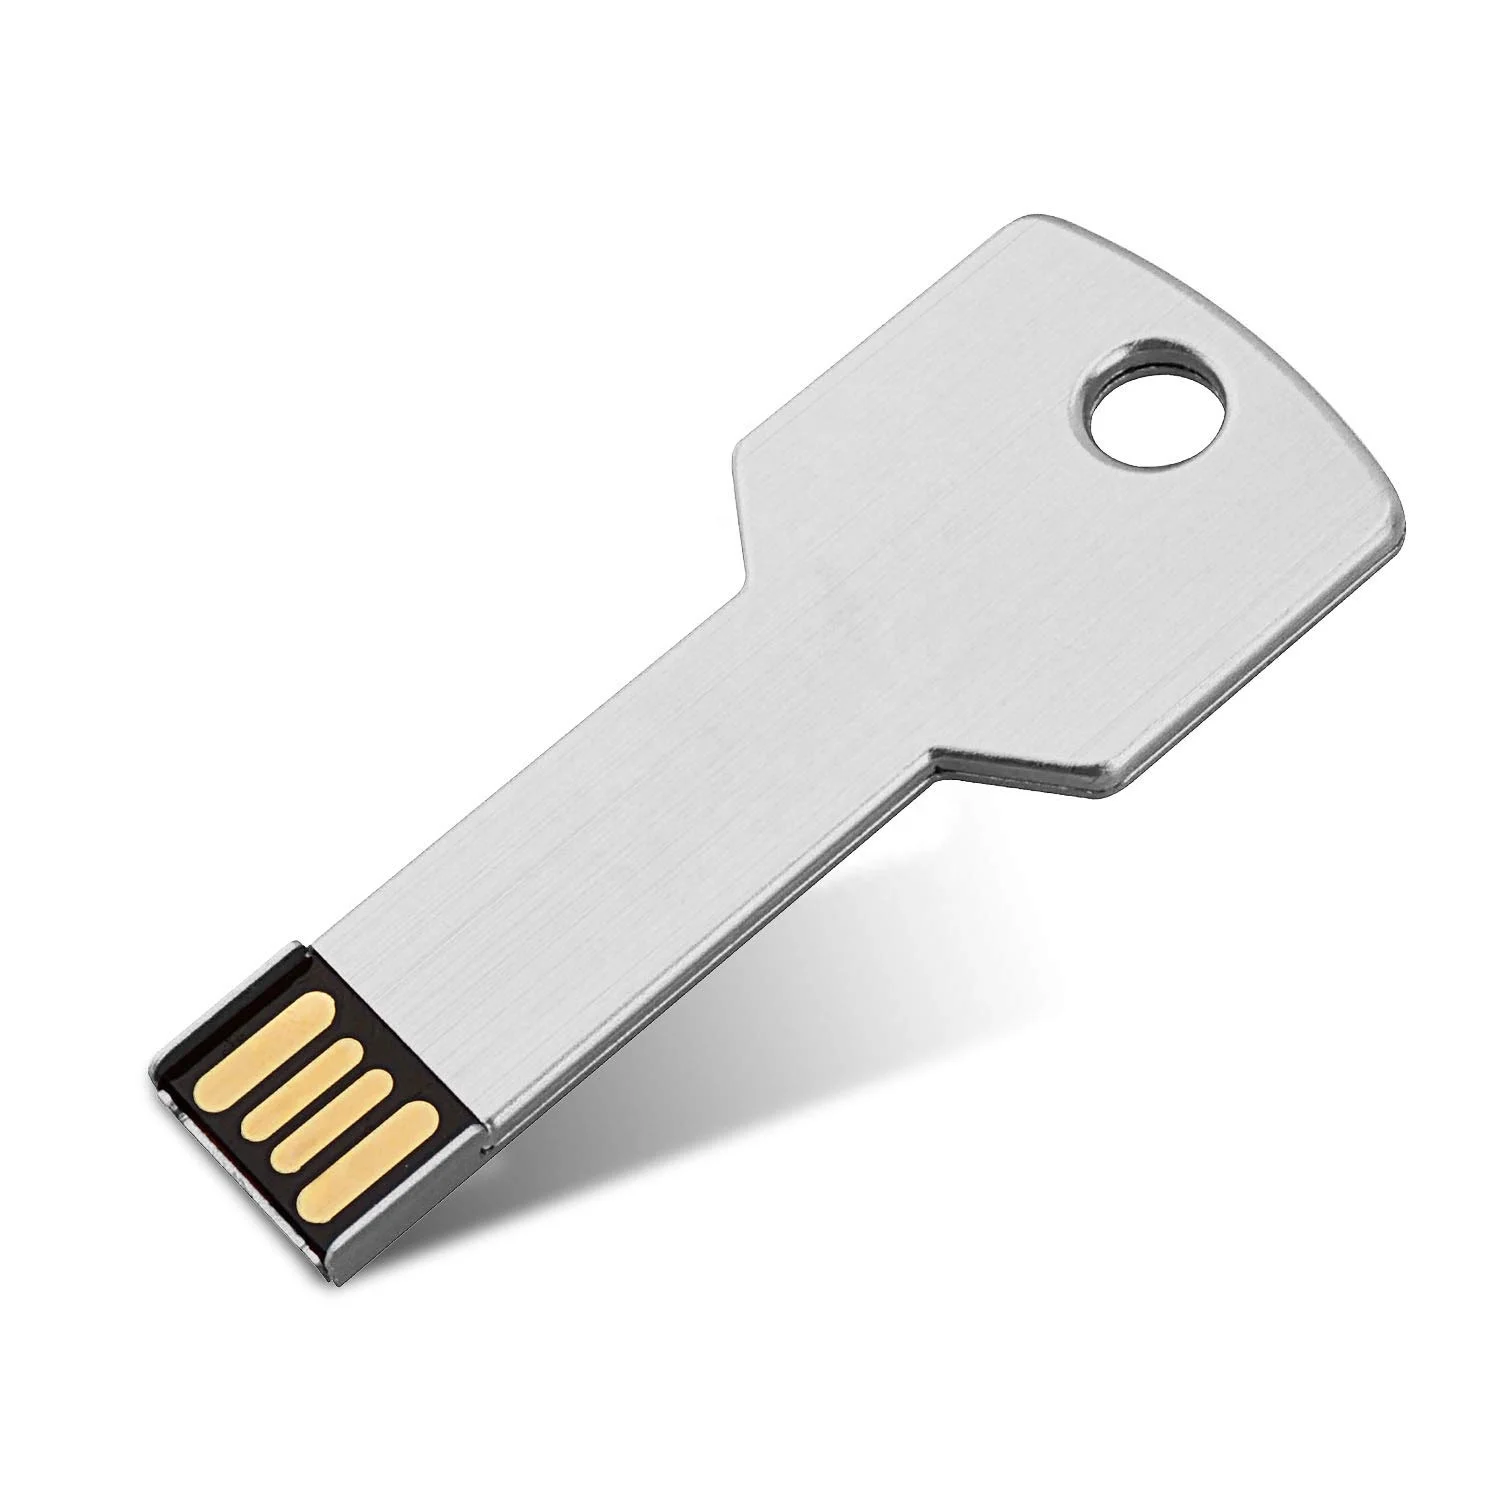 Flash ключ. Флешка ключ. USB флешка ключ. Флешка металлическая. Флешка в виде ключа.